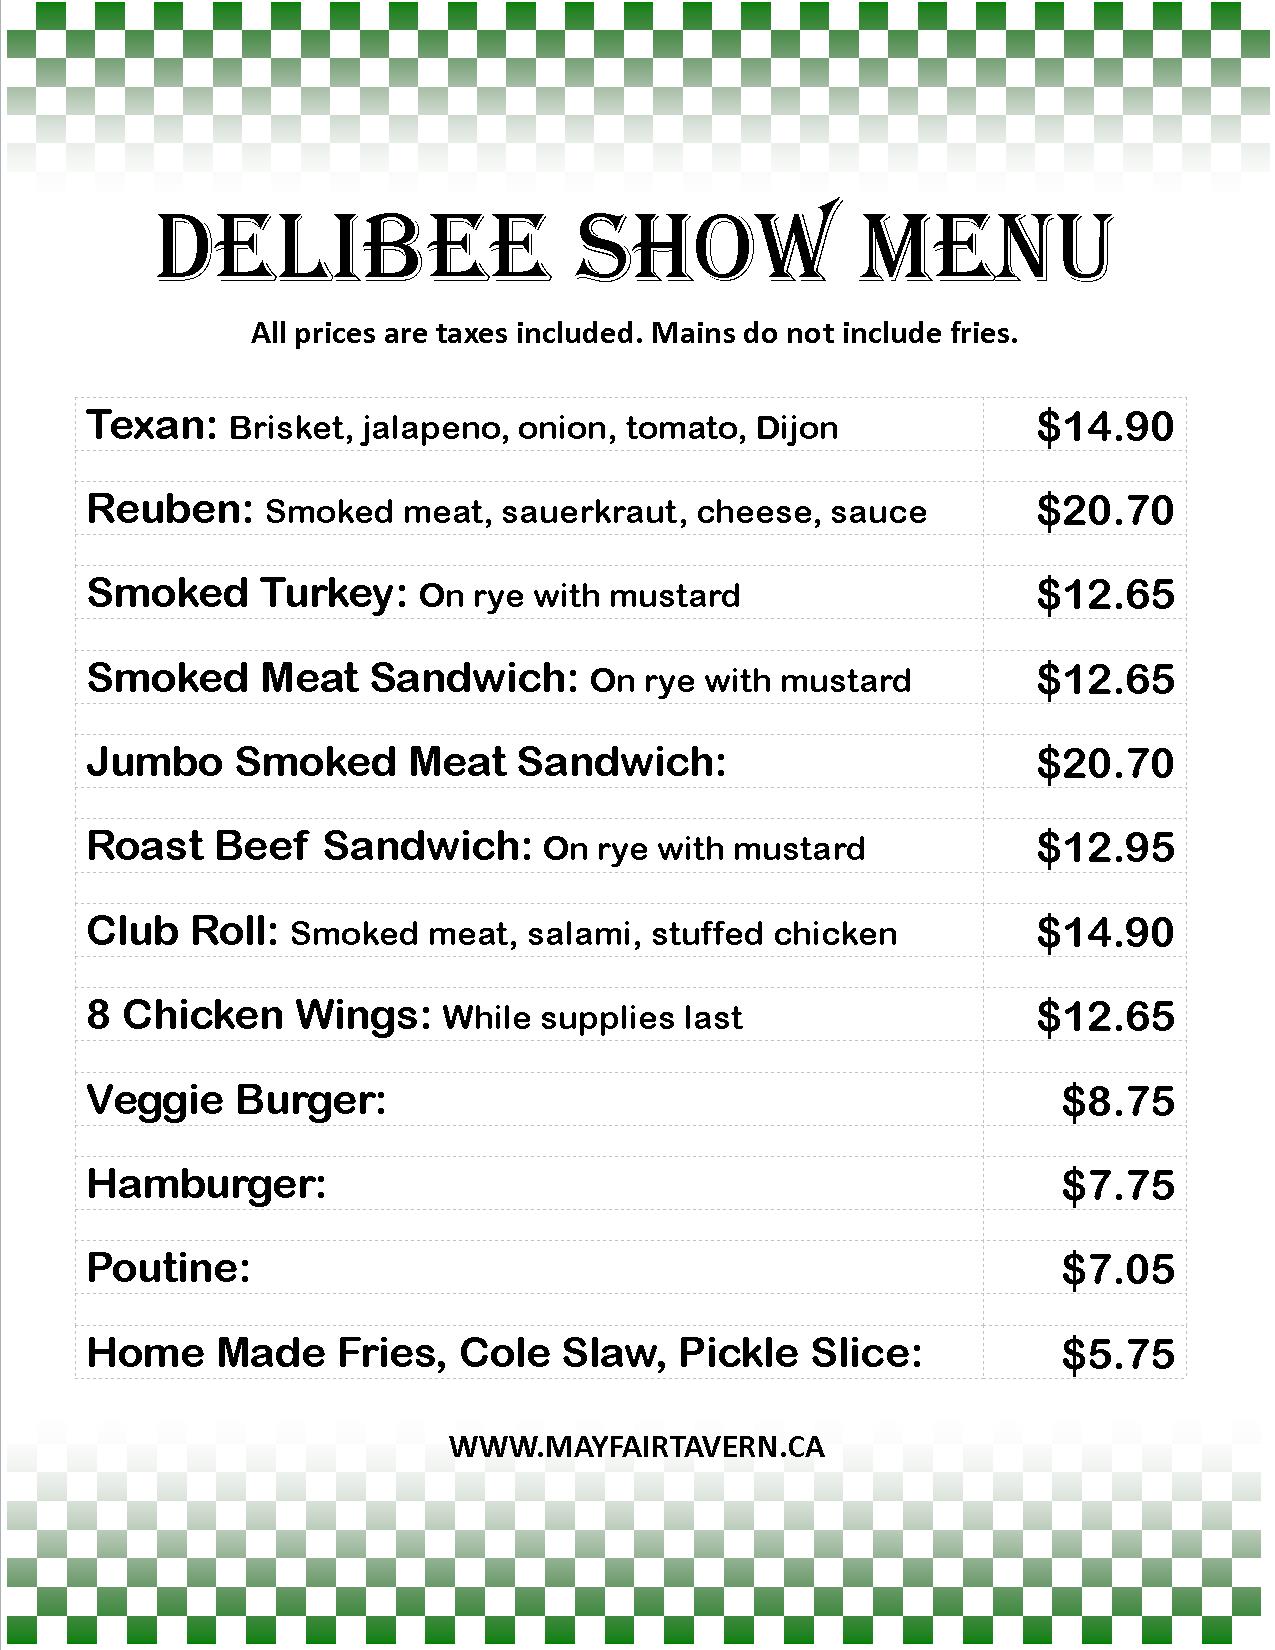 delibee-show-menu